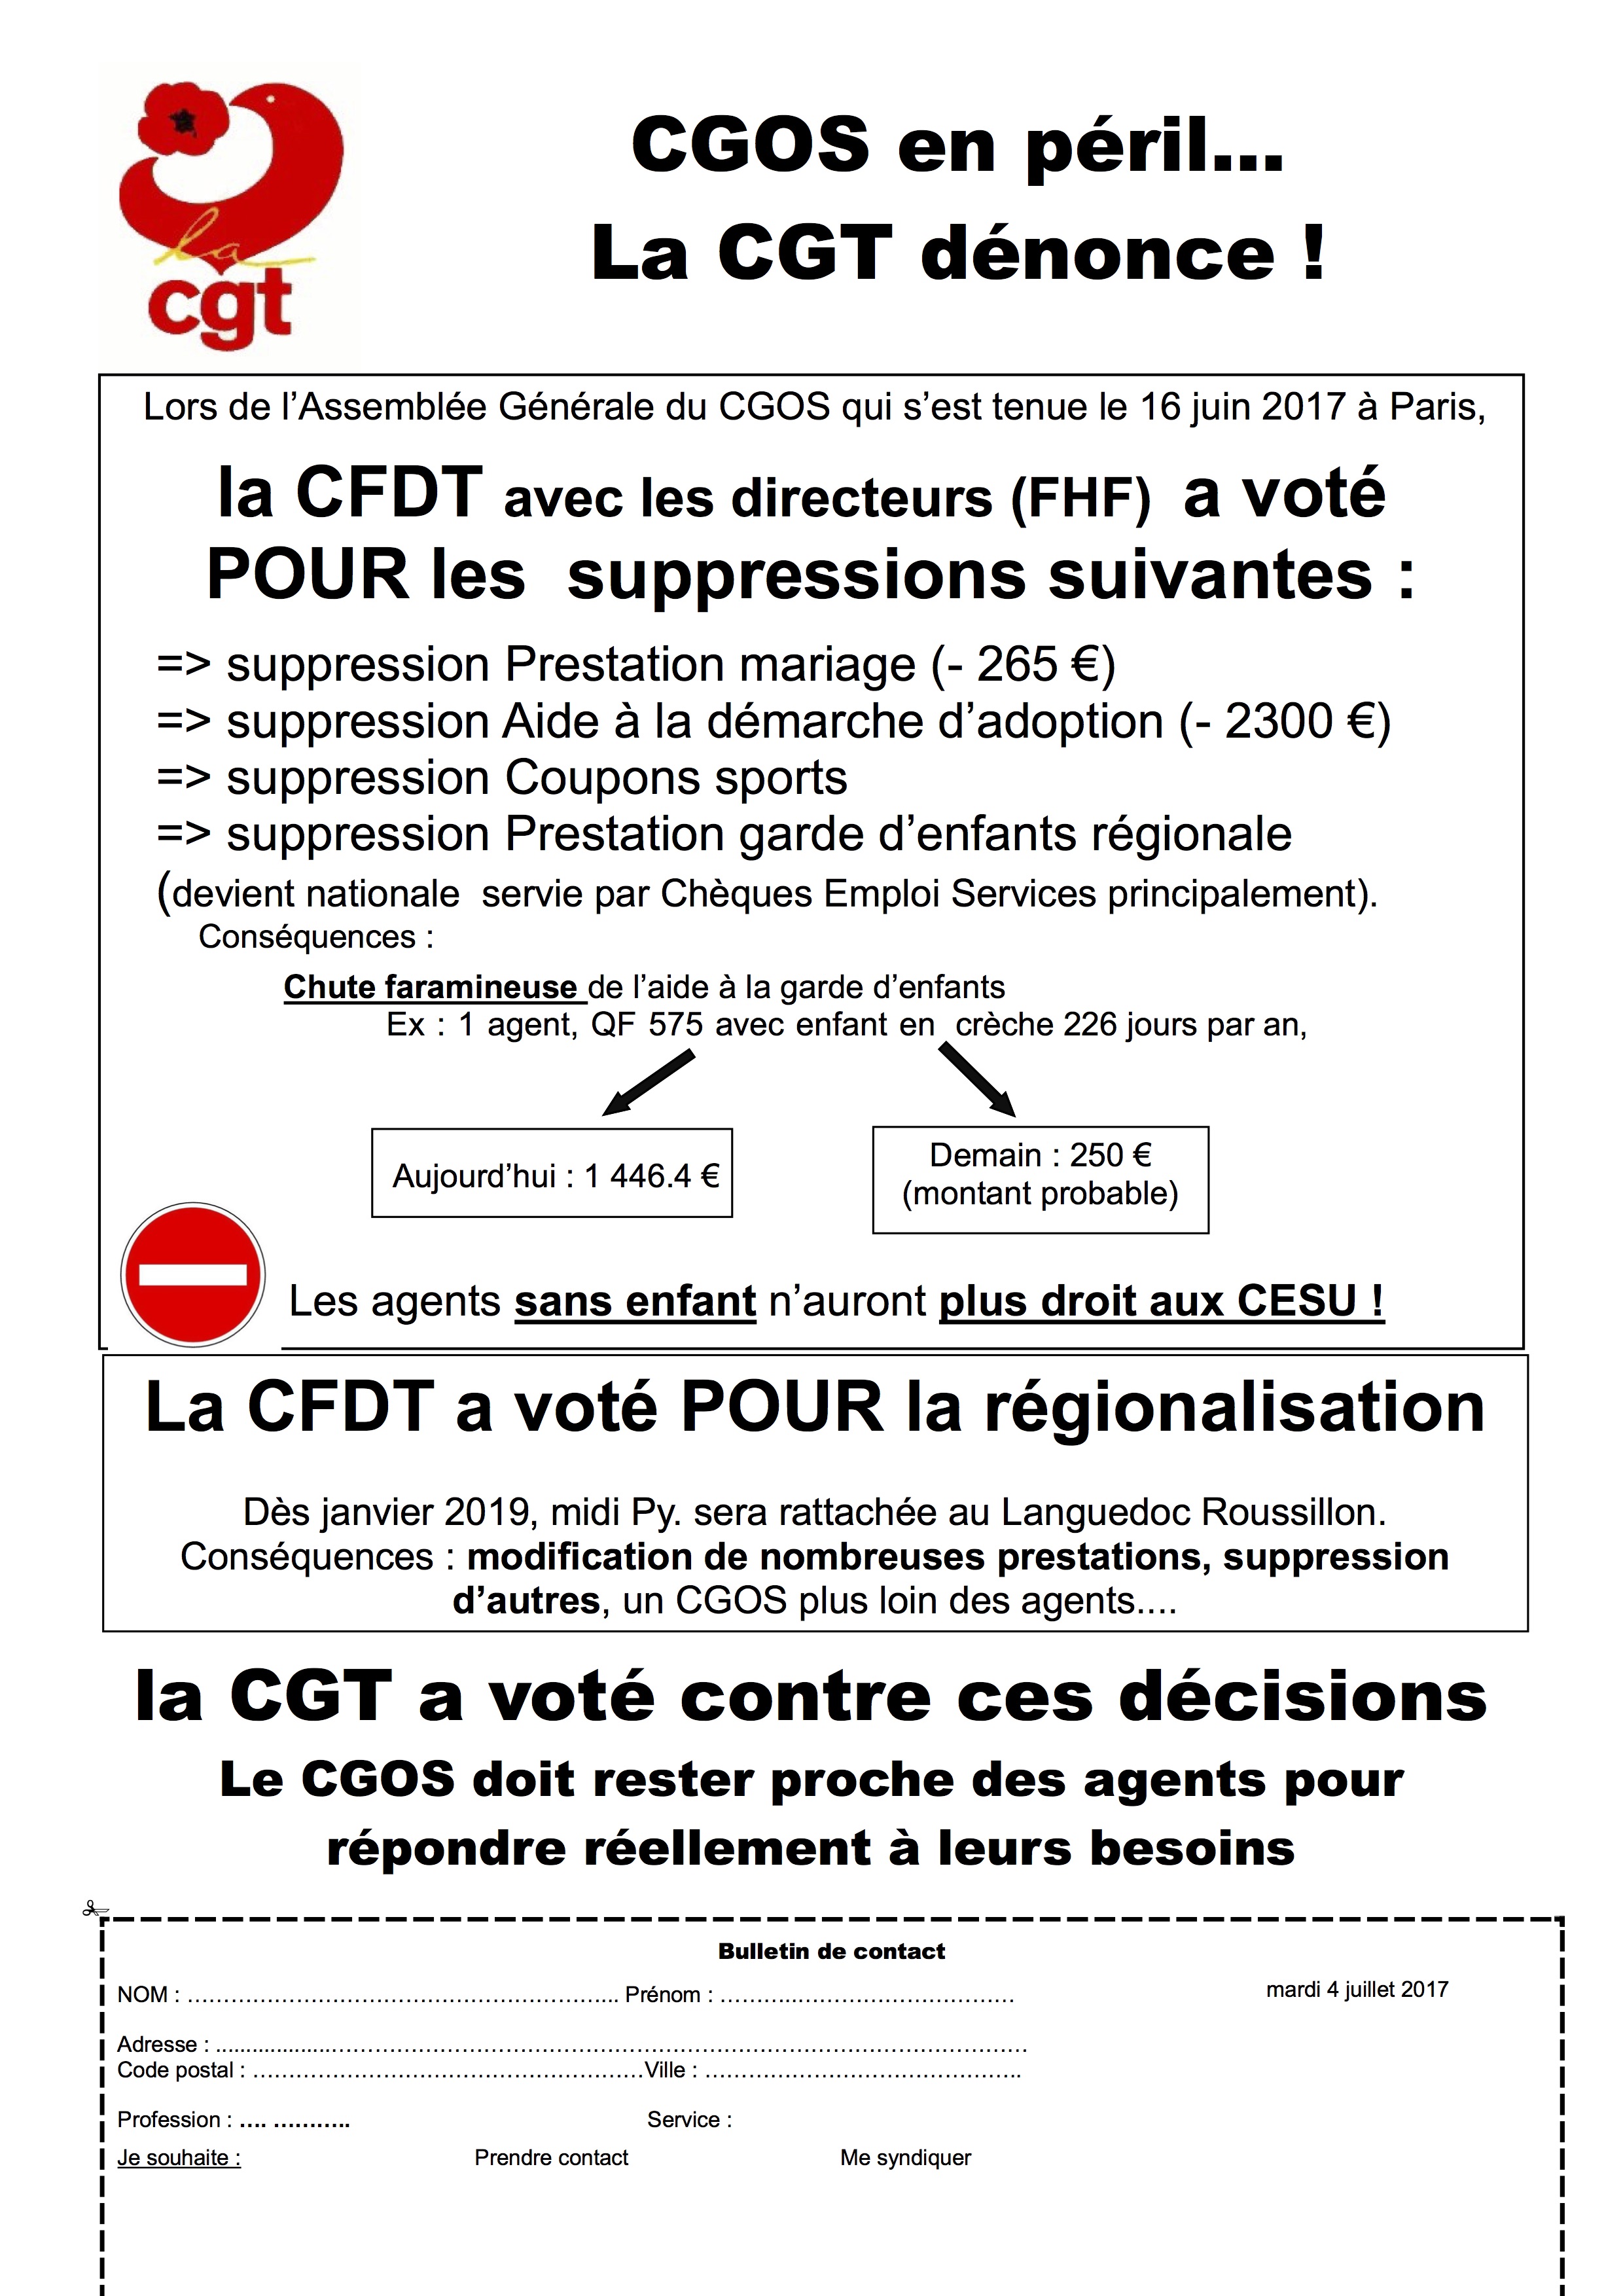 CGOS : La CFDT et la FHF votent pour la suppressions de prestation